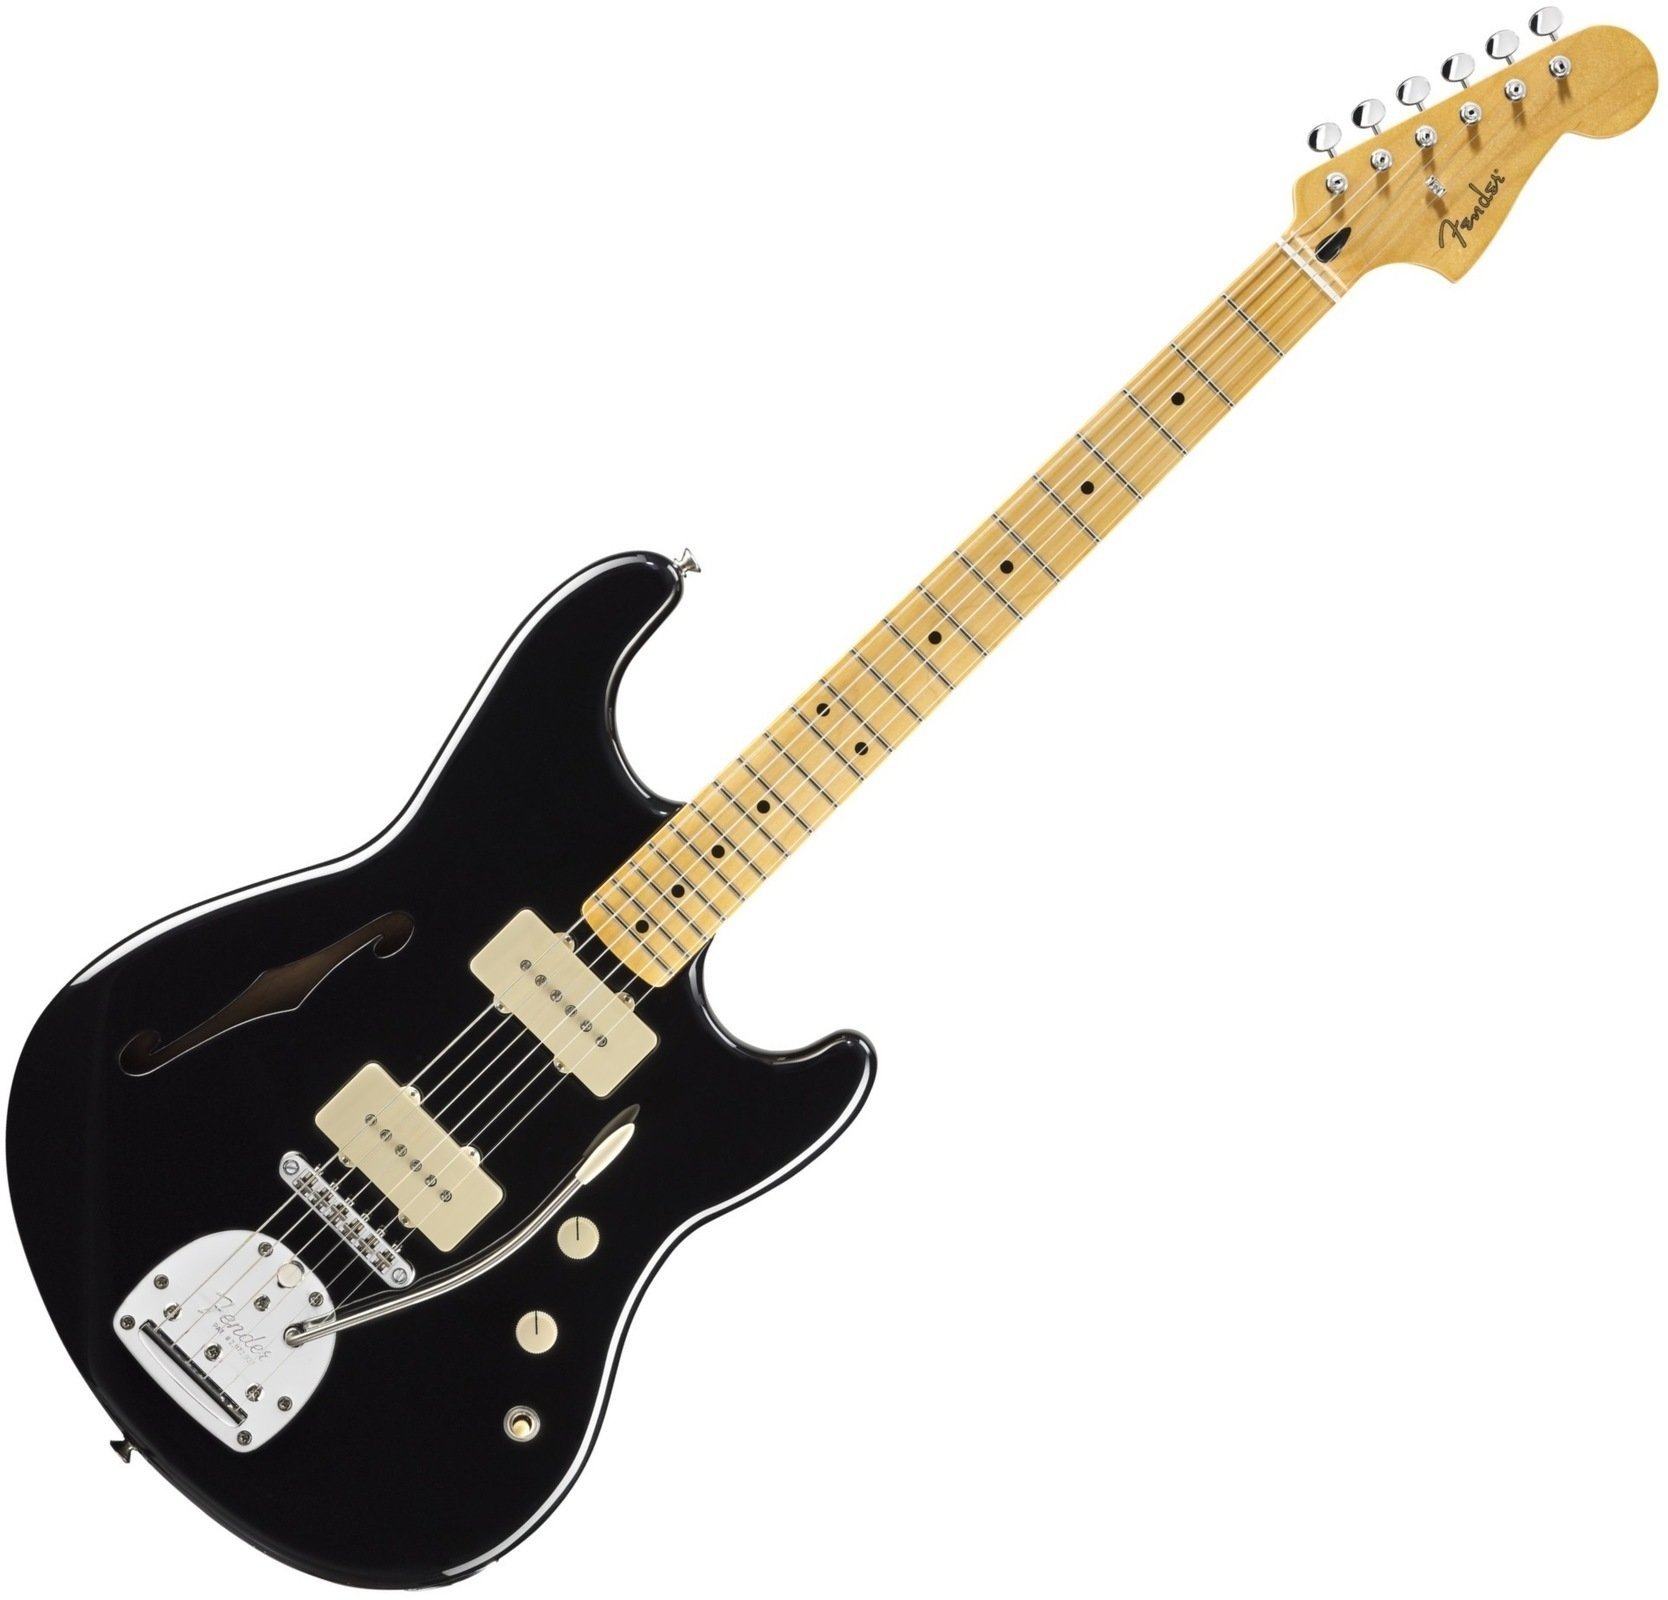 Ηλεκτρική Κιθάρα Fender Pawn Shop Offset Special, Maple Fingerboard, Black